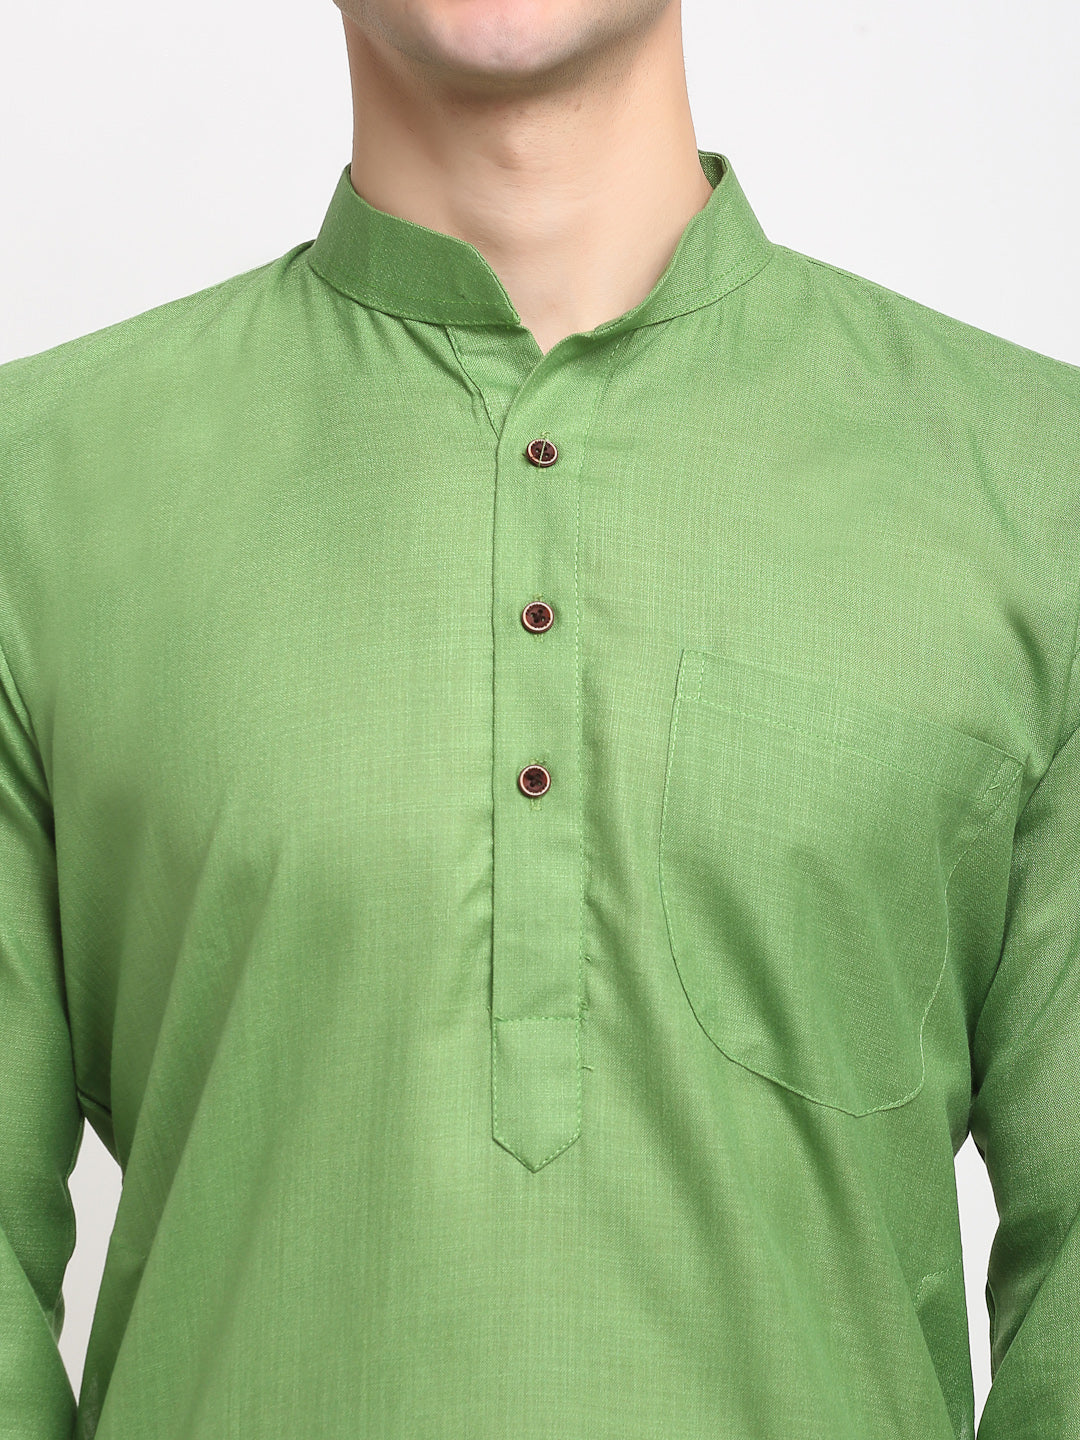 Men's Cotton Solid Kurta Pyjama ( JOKP 532Parrot )